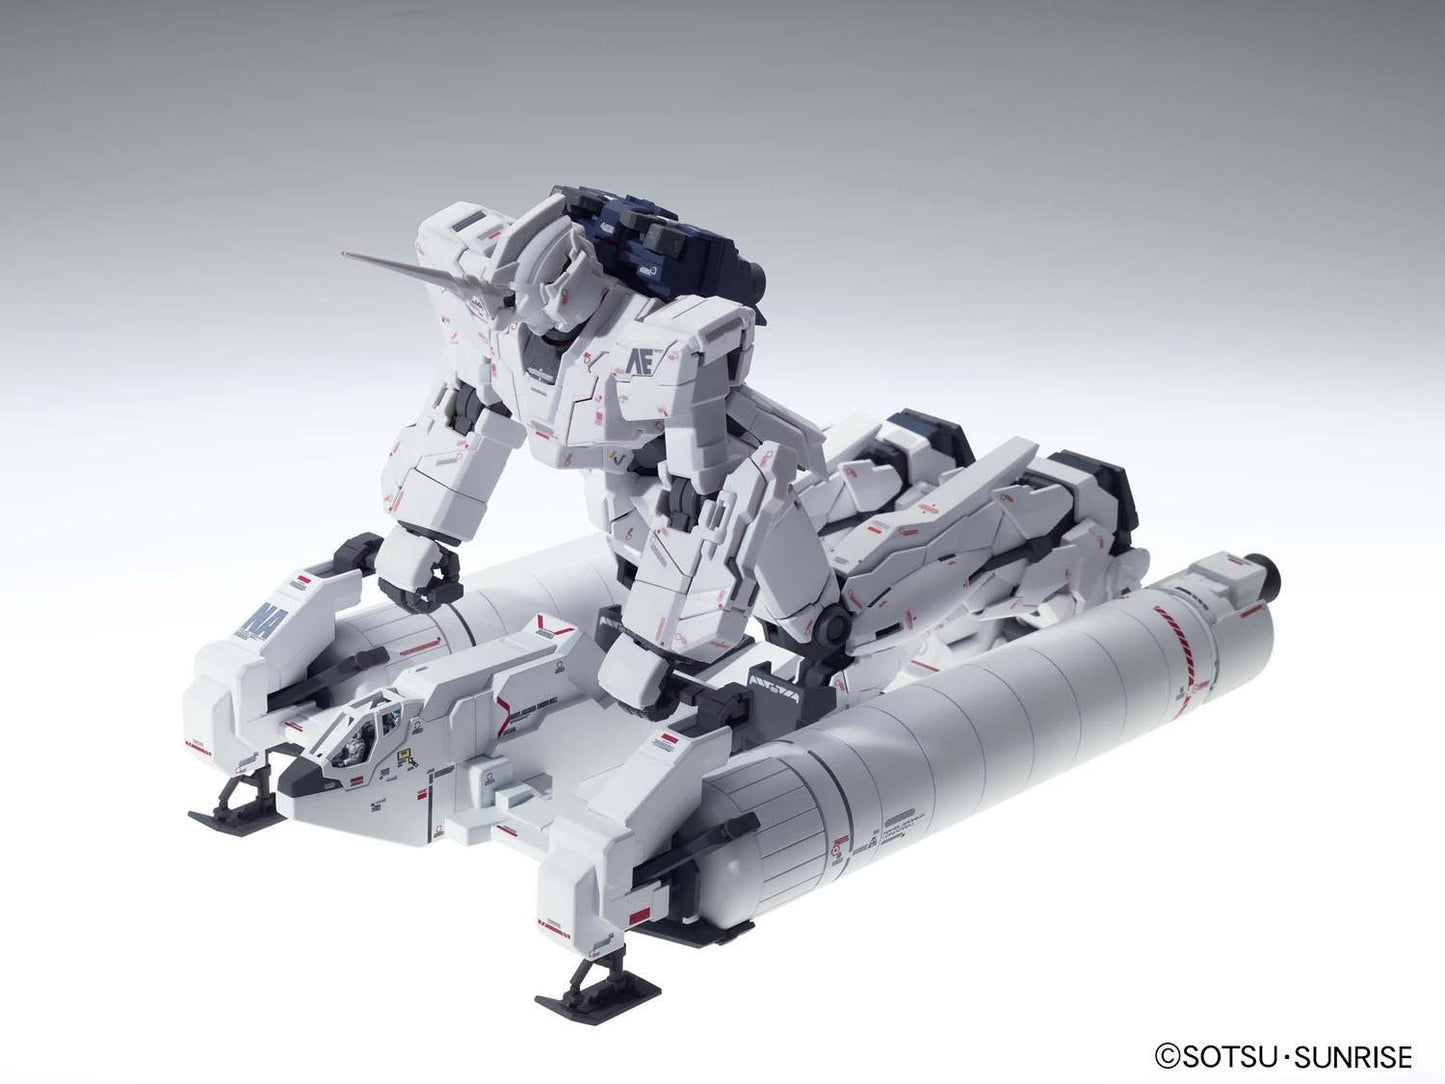 MG Full Armor Unicorn Gundam "Ver. Ka" 1/100